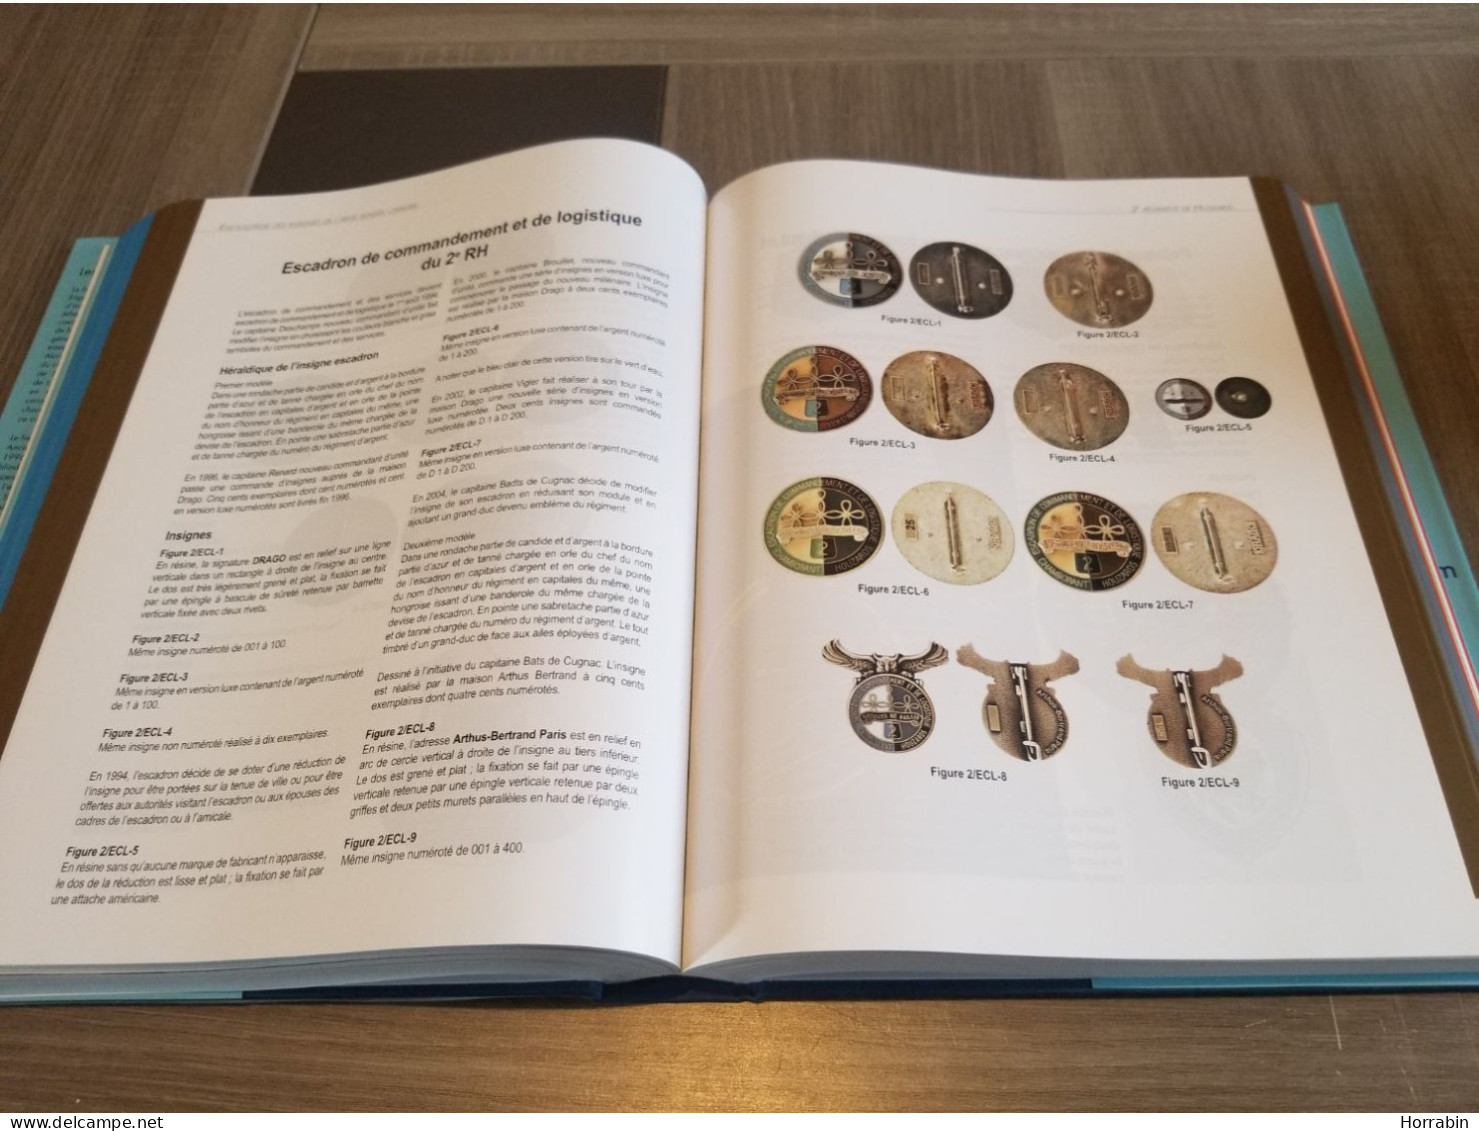 Encyclopédie Des Insignes De L'Arme Blindée Cavalerie / Tome 5 / Les Hussards - France